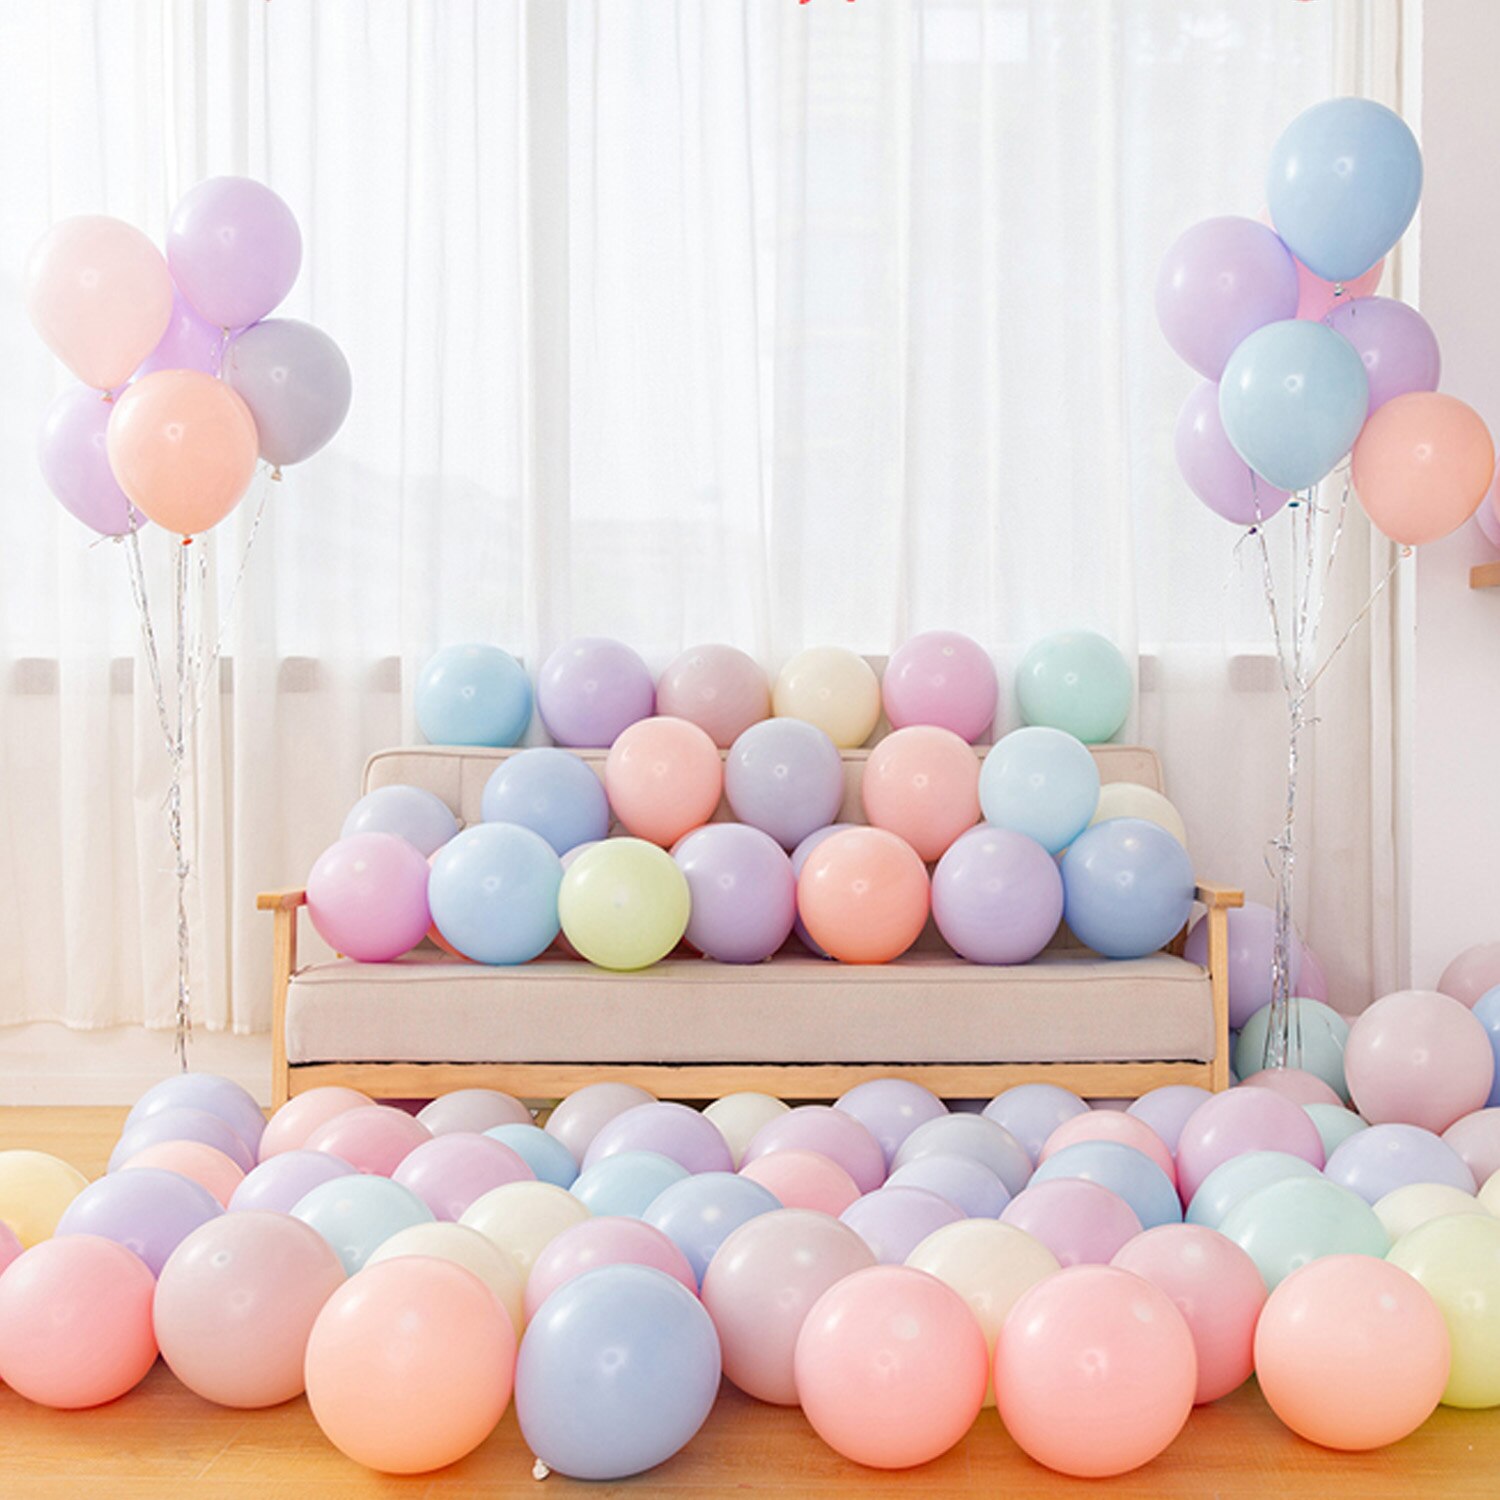 100 Pcs 5 Inch Kleurrijke Leuke Ronde Snoep Kleuren Latex Ballonnen Opblaasbare Lucht Ballonnen Bruiloft Verjaardag Woondecoratie Leveringen